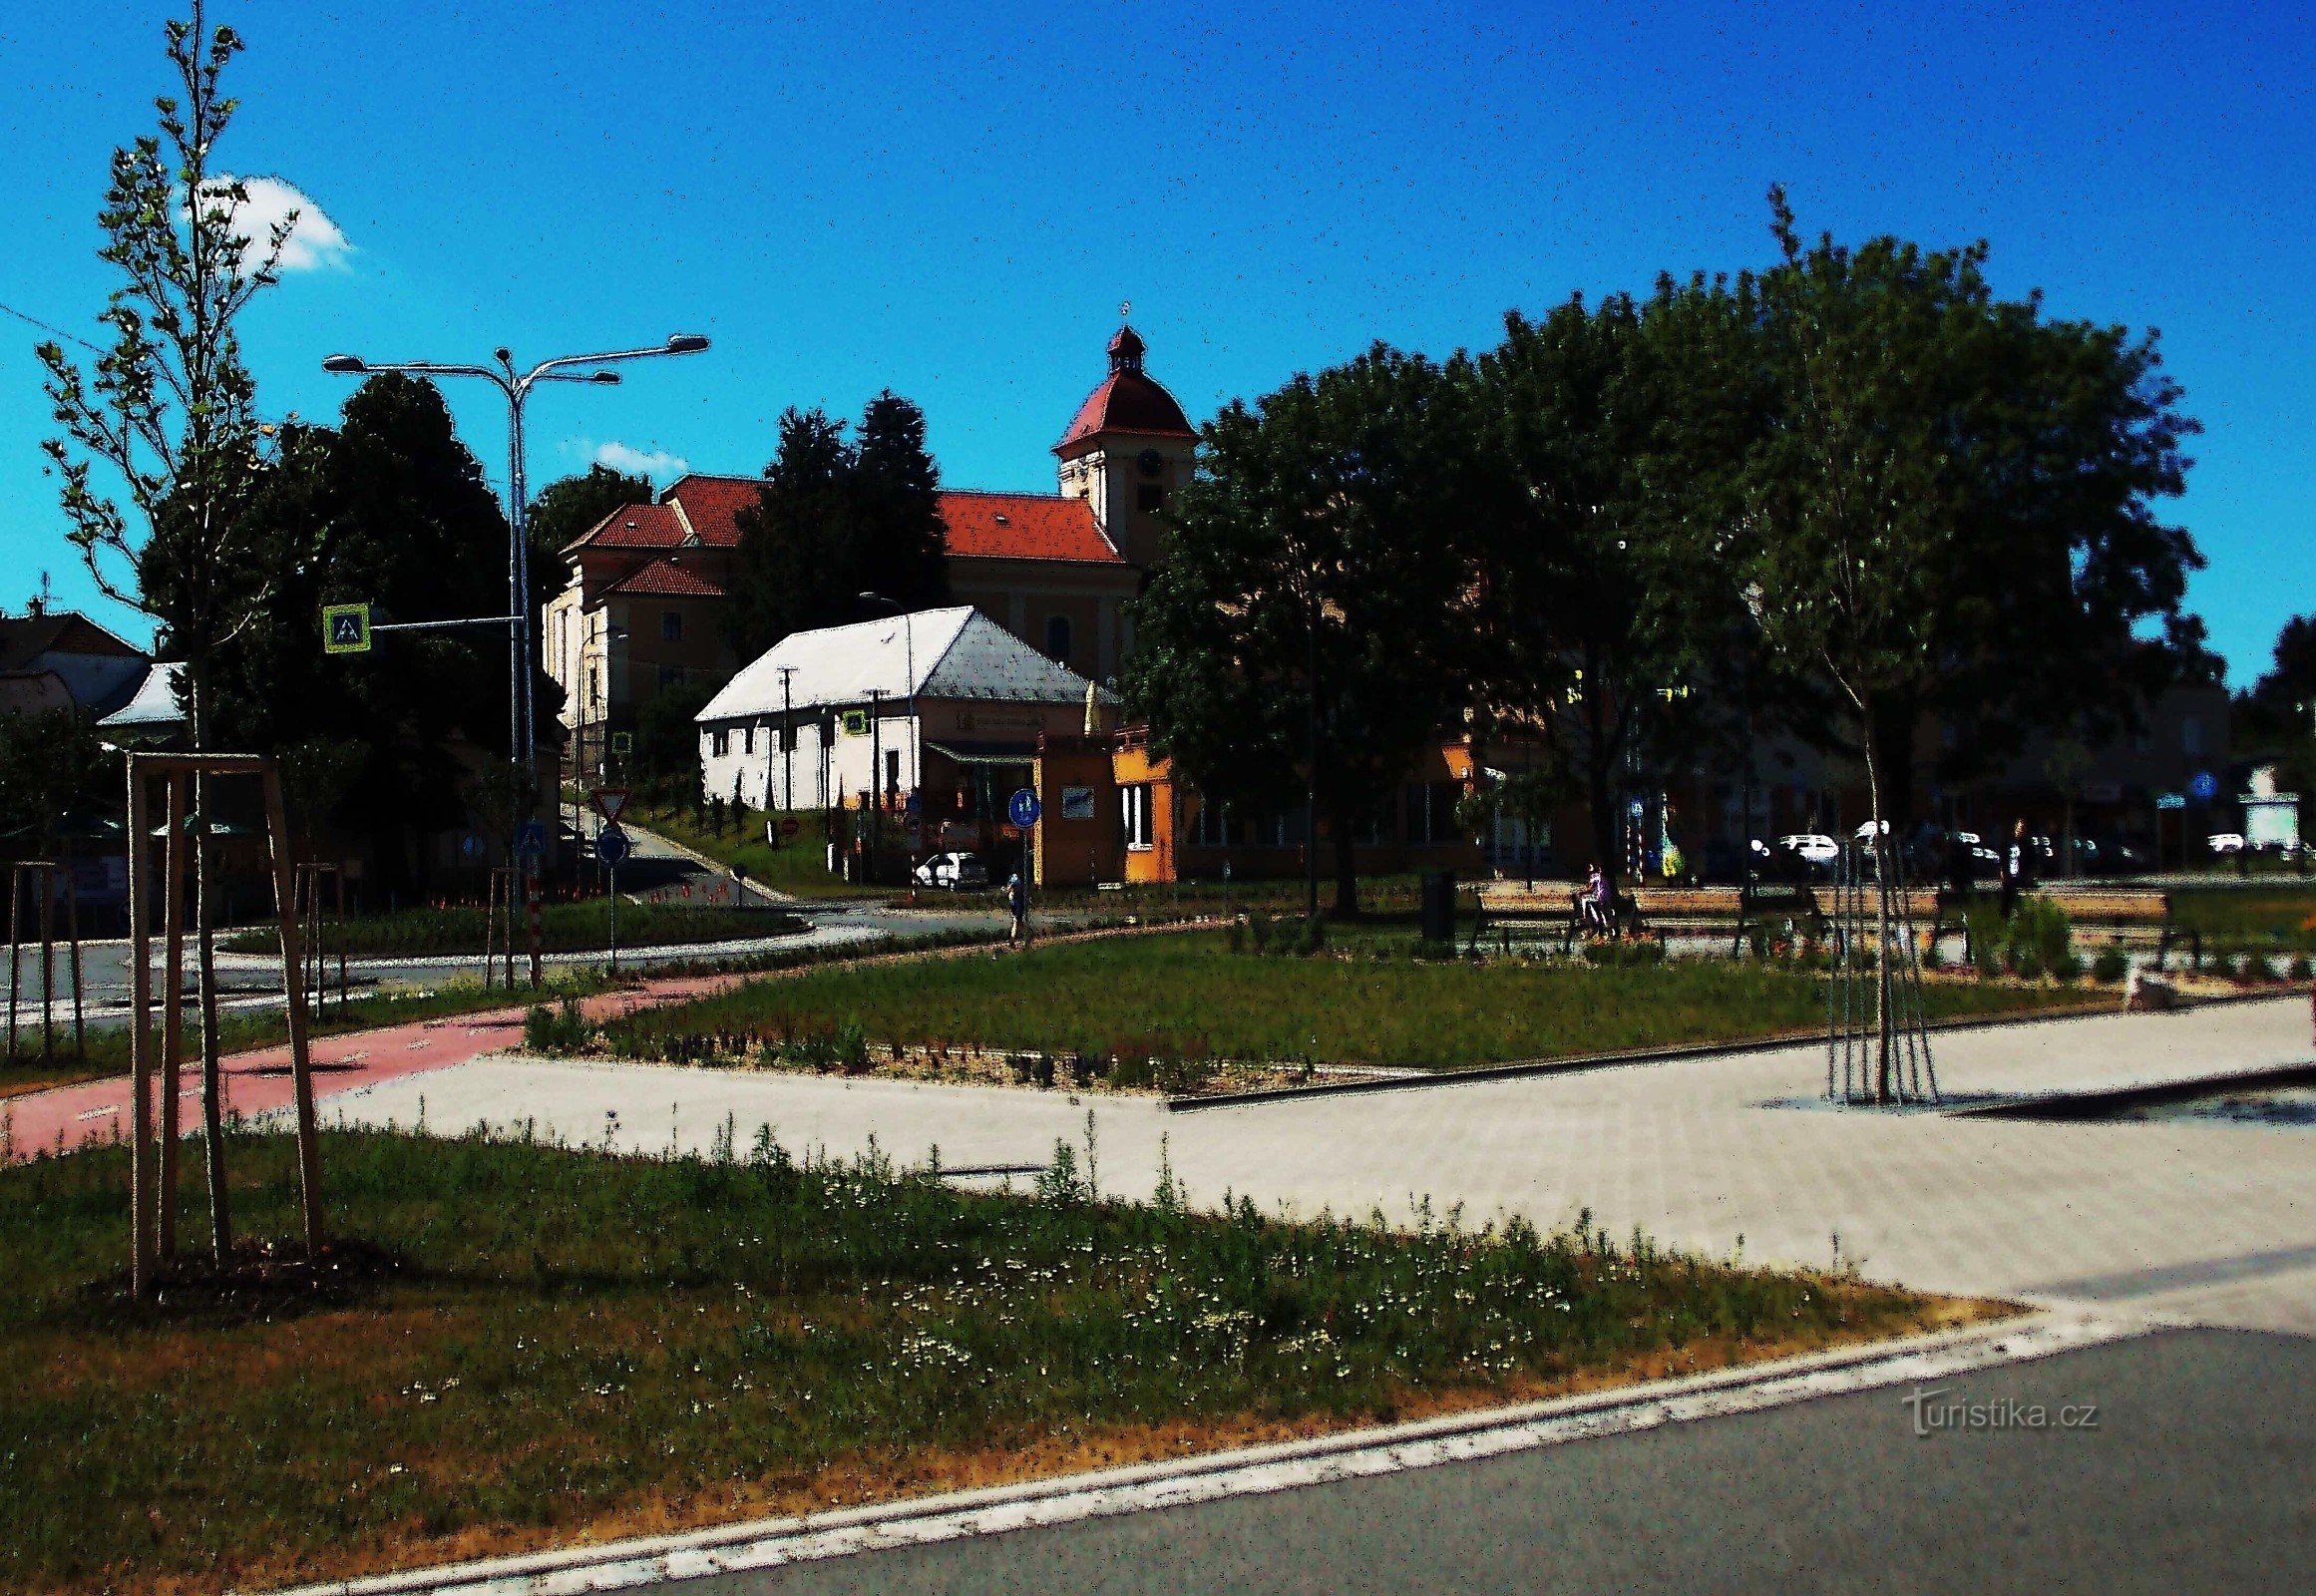 Quảng trường được khôi phục ở Malenovice gần Zlín